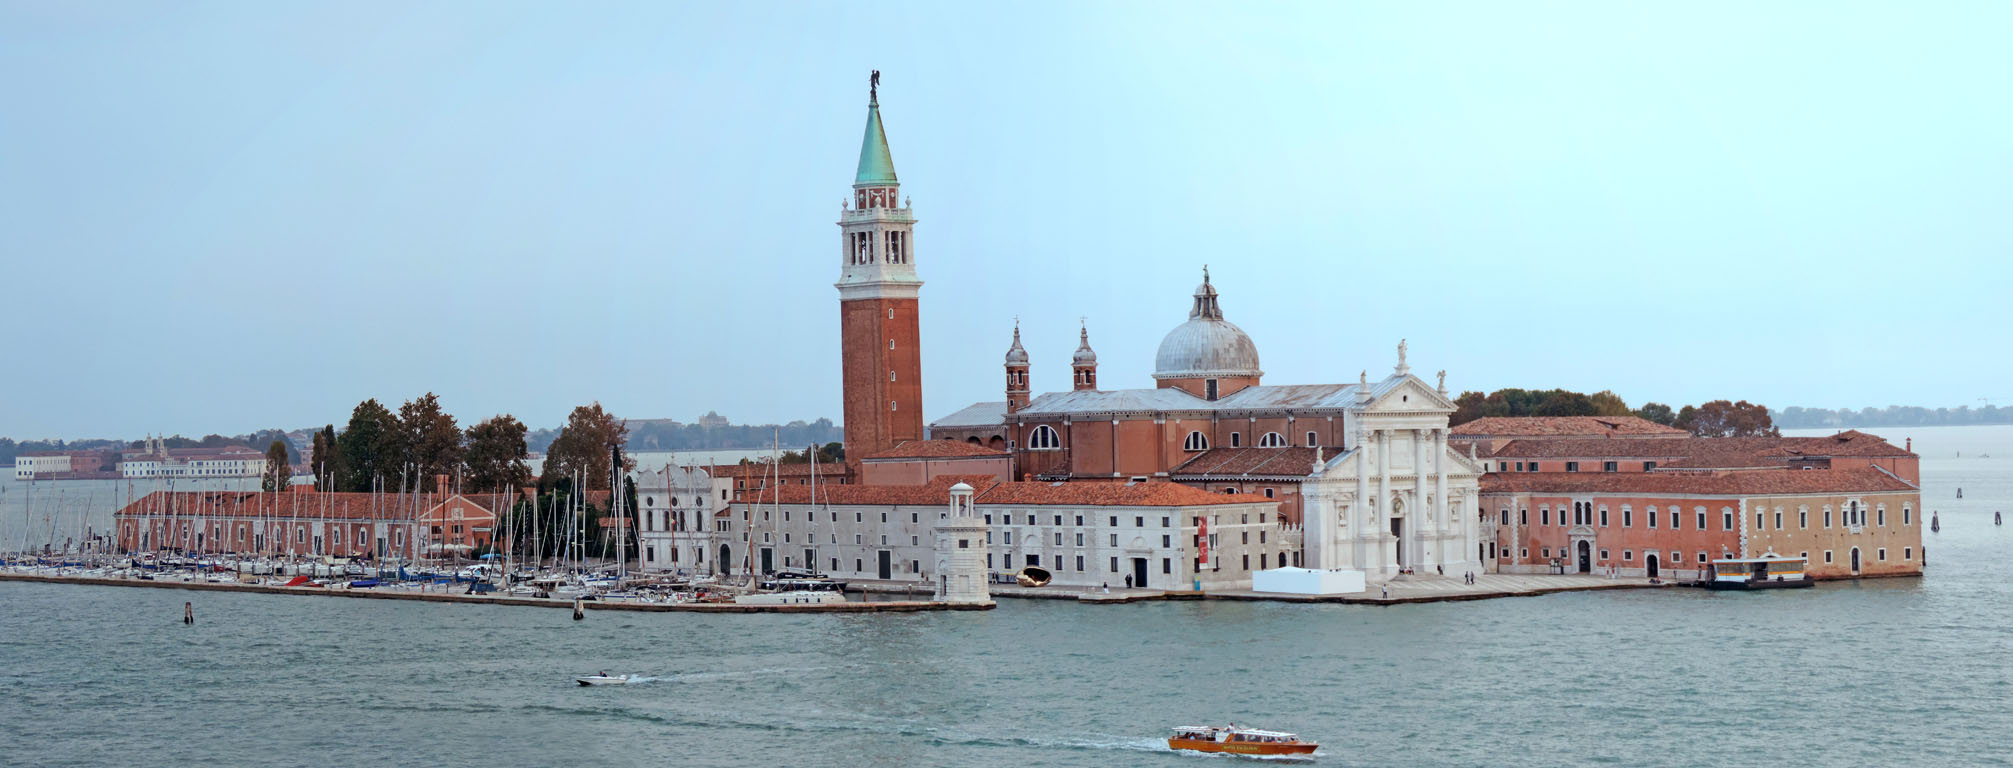 04-Venice-6 San Giorgio Maggiore